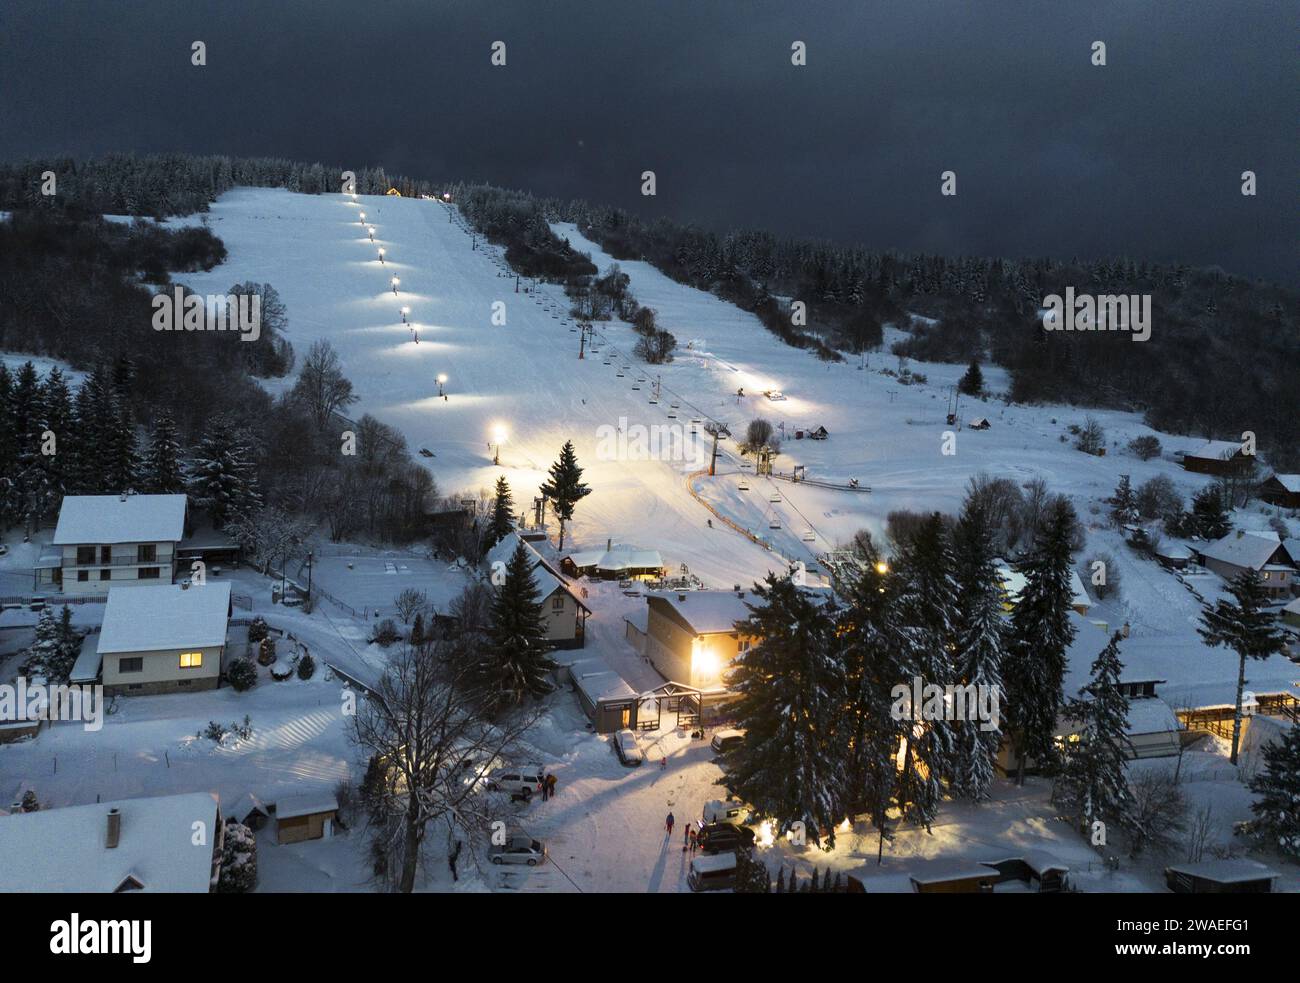 Piste de ski d'hiver la nuit avec téléphérique Banque D'Images